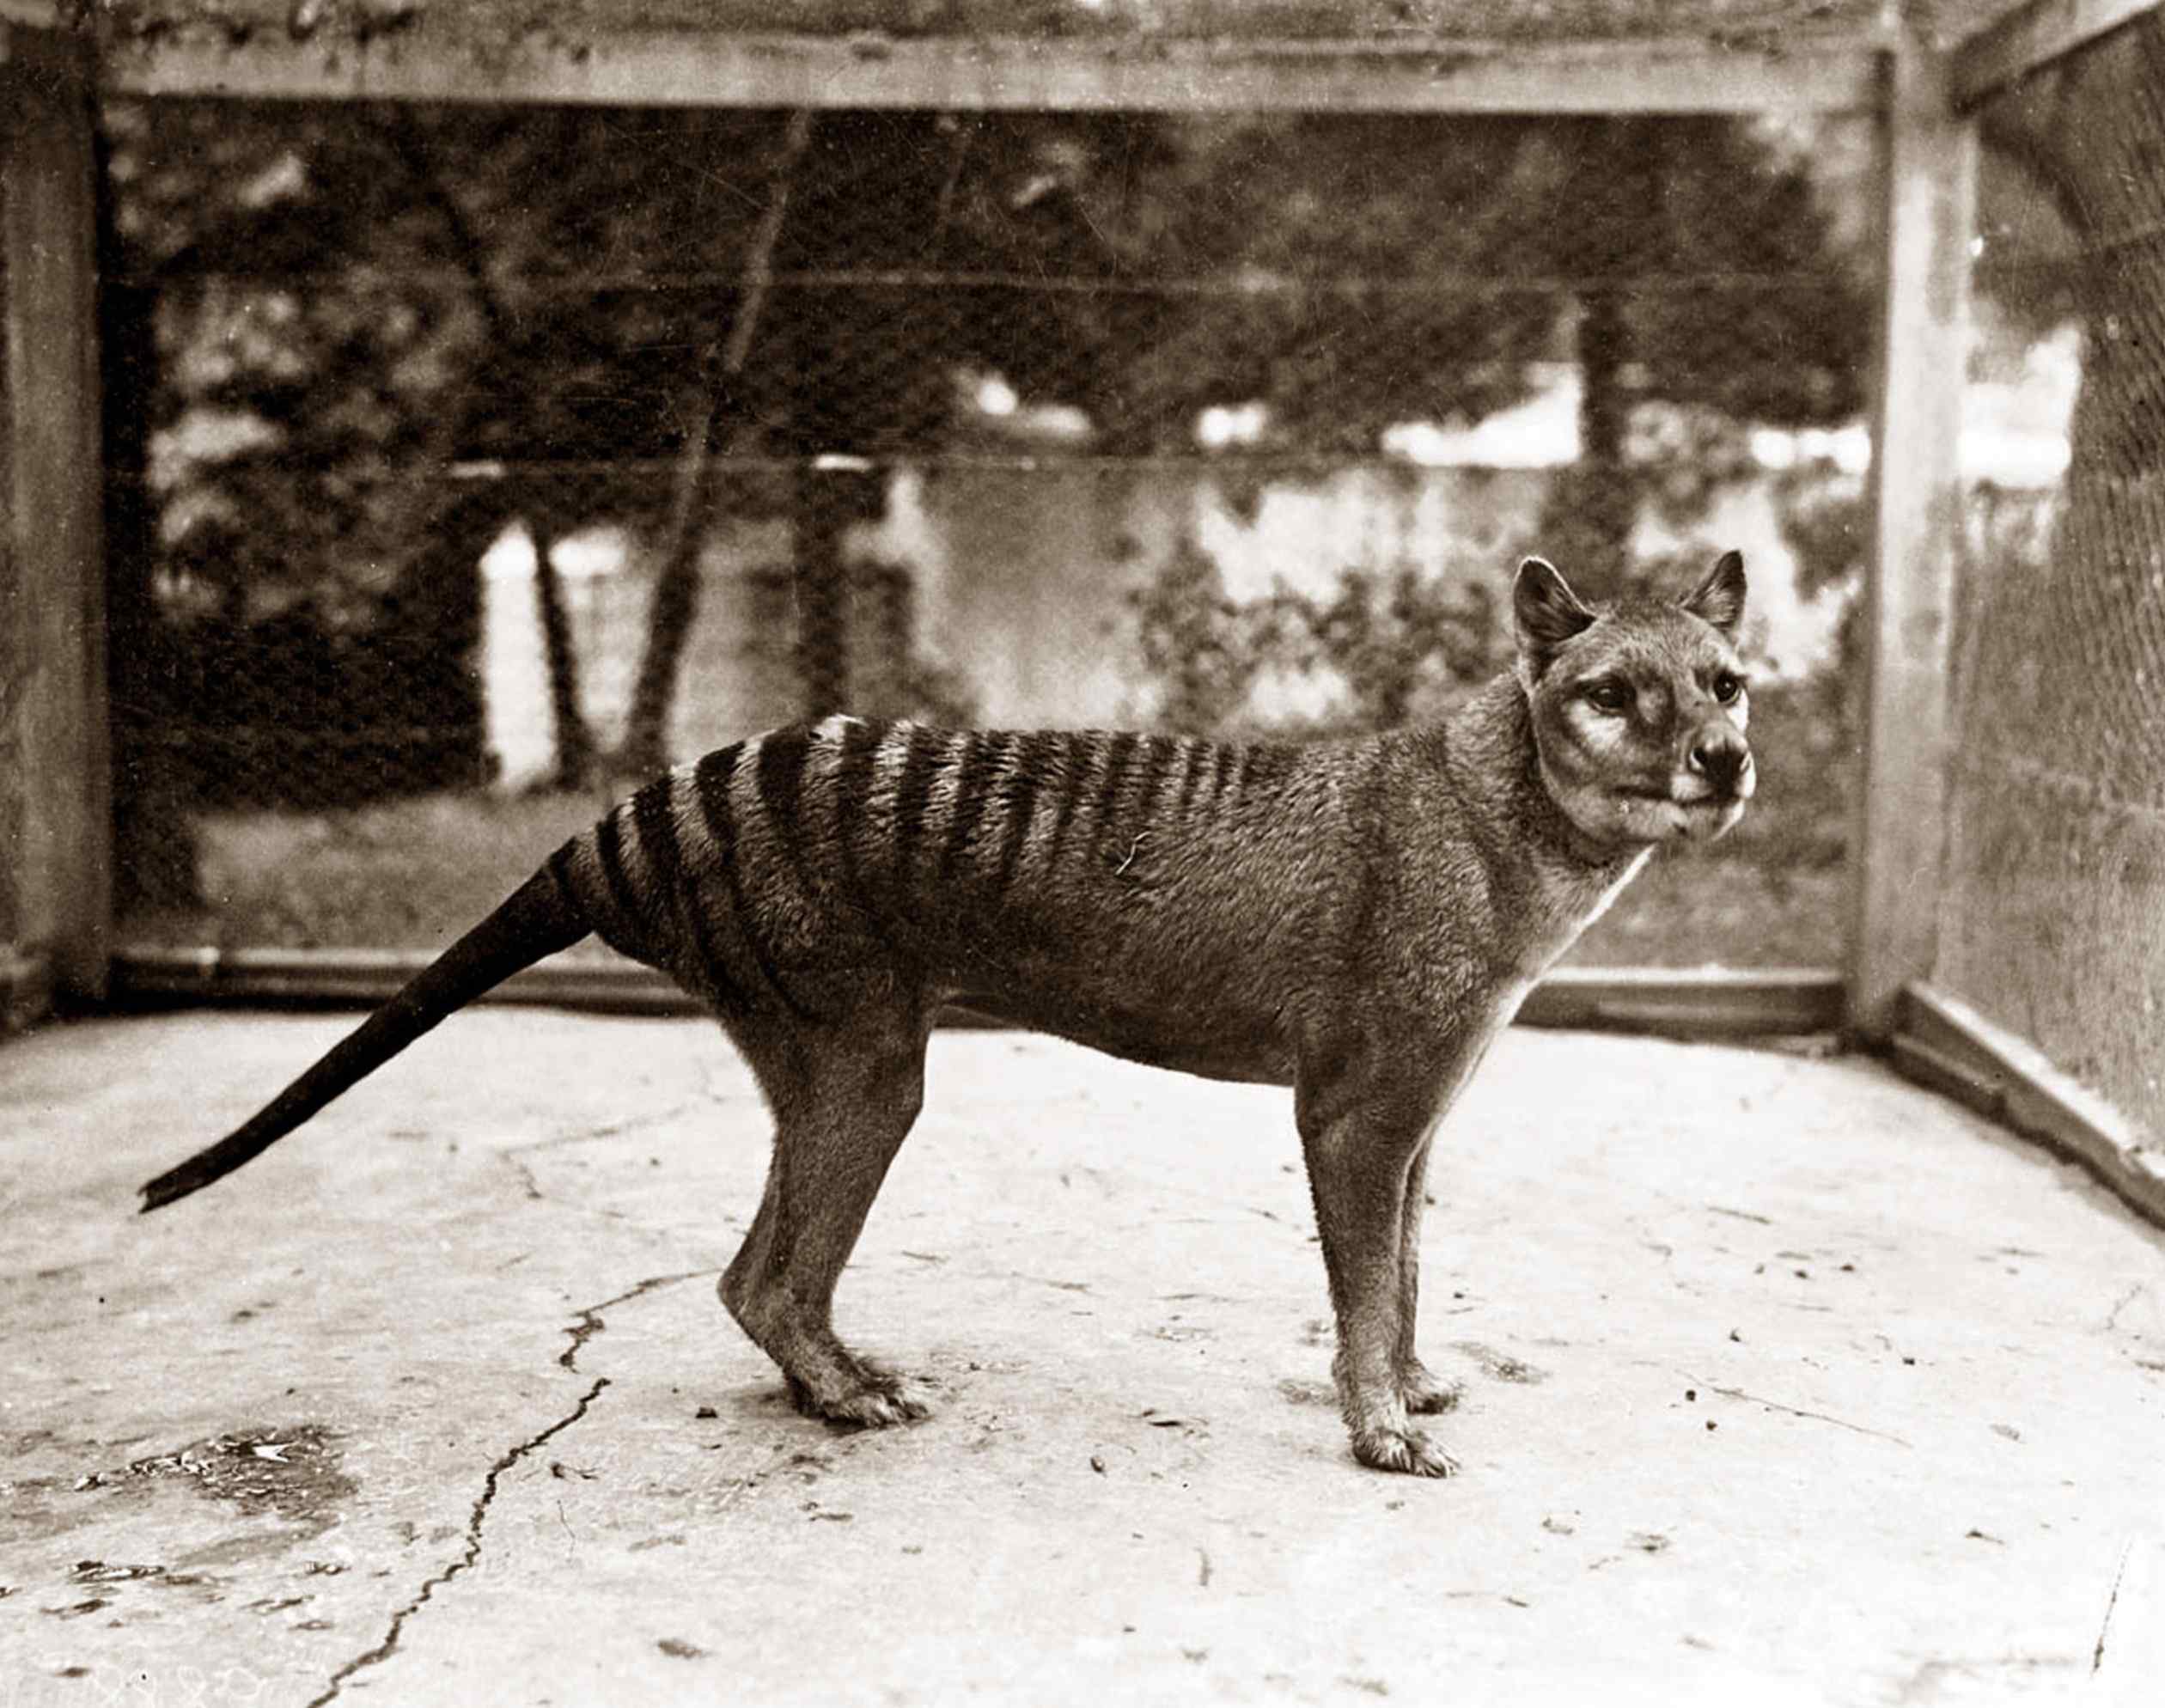 Paskutinis žinomas Tasmanijos tigras mirė nelaisvėje 1936 m. Tačiau tyrimas rodo, kad XX amžiuje buvo pastebėta dar šimtai.